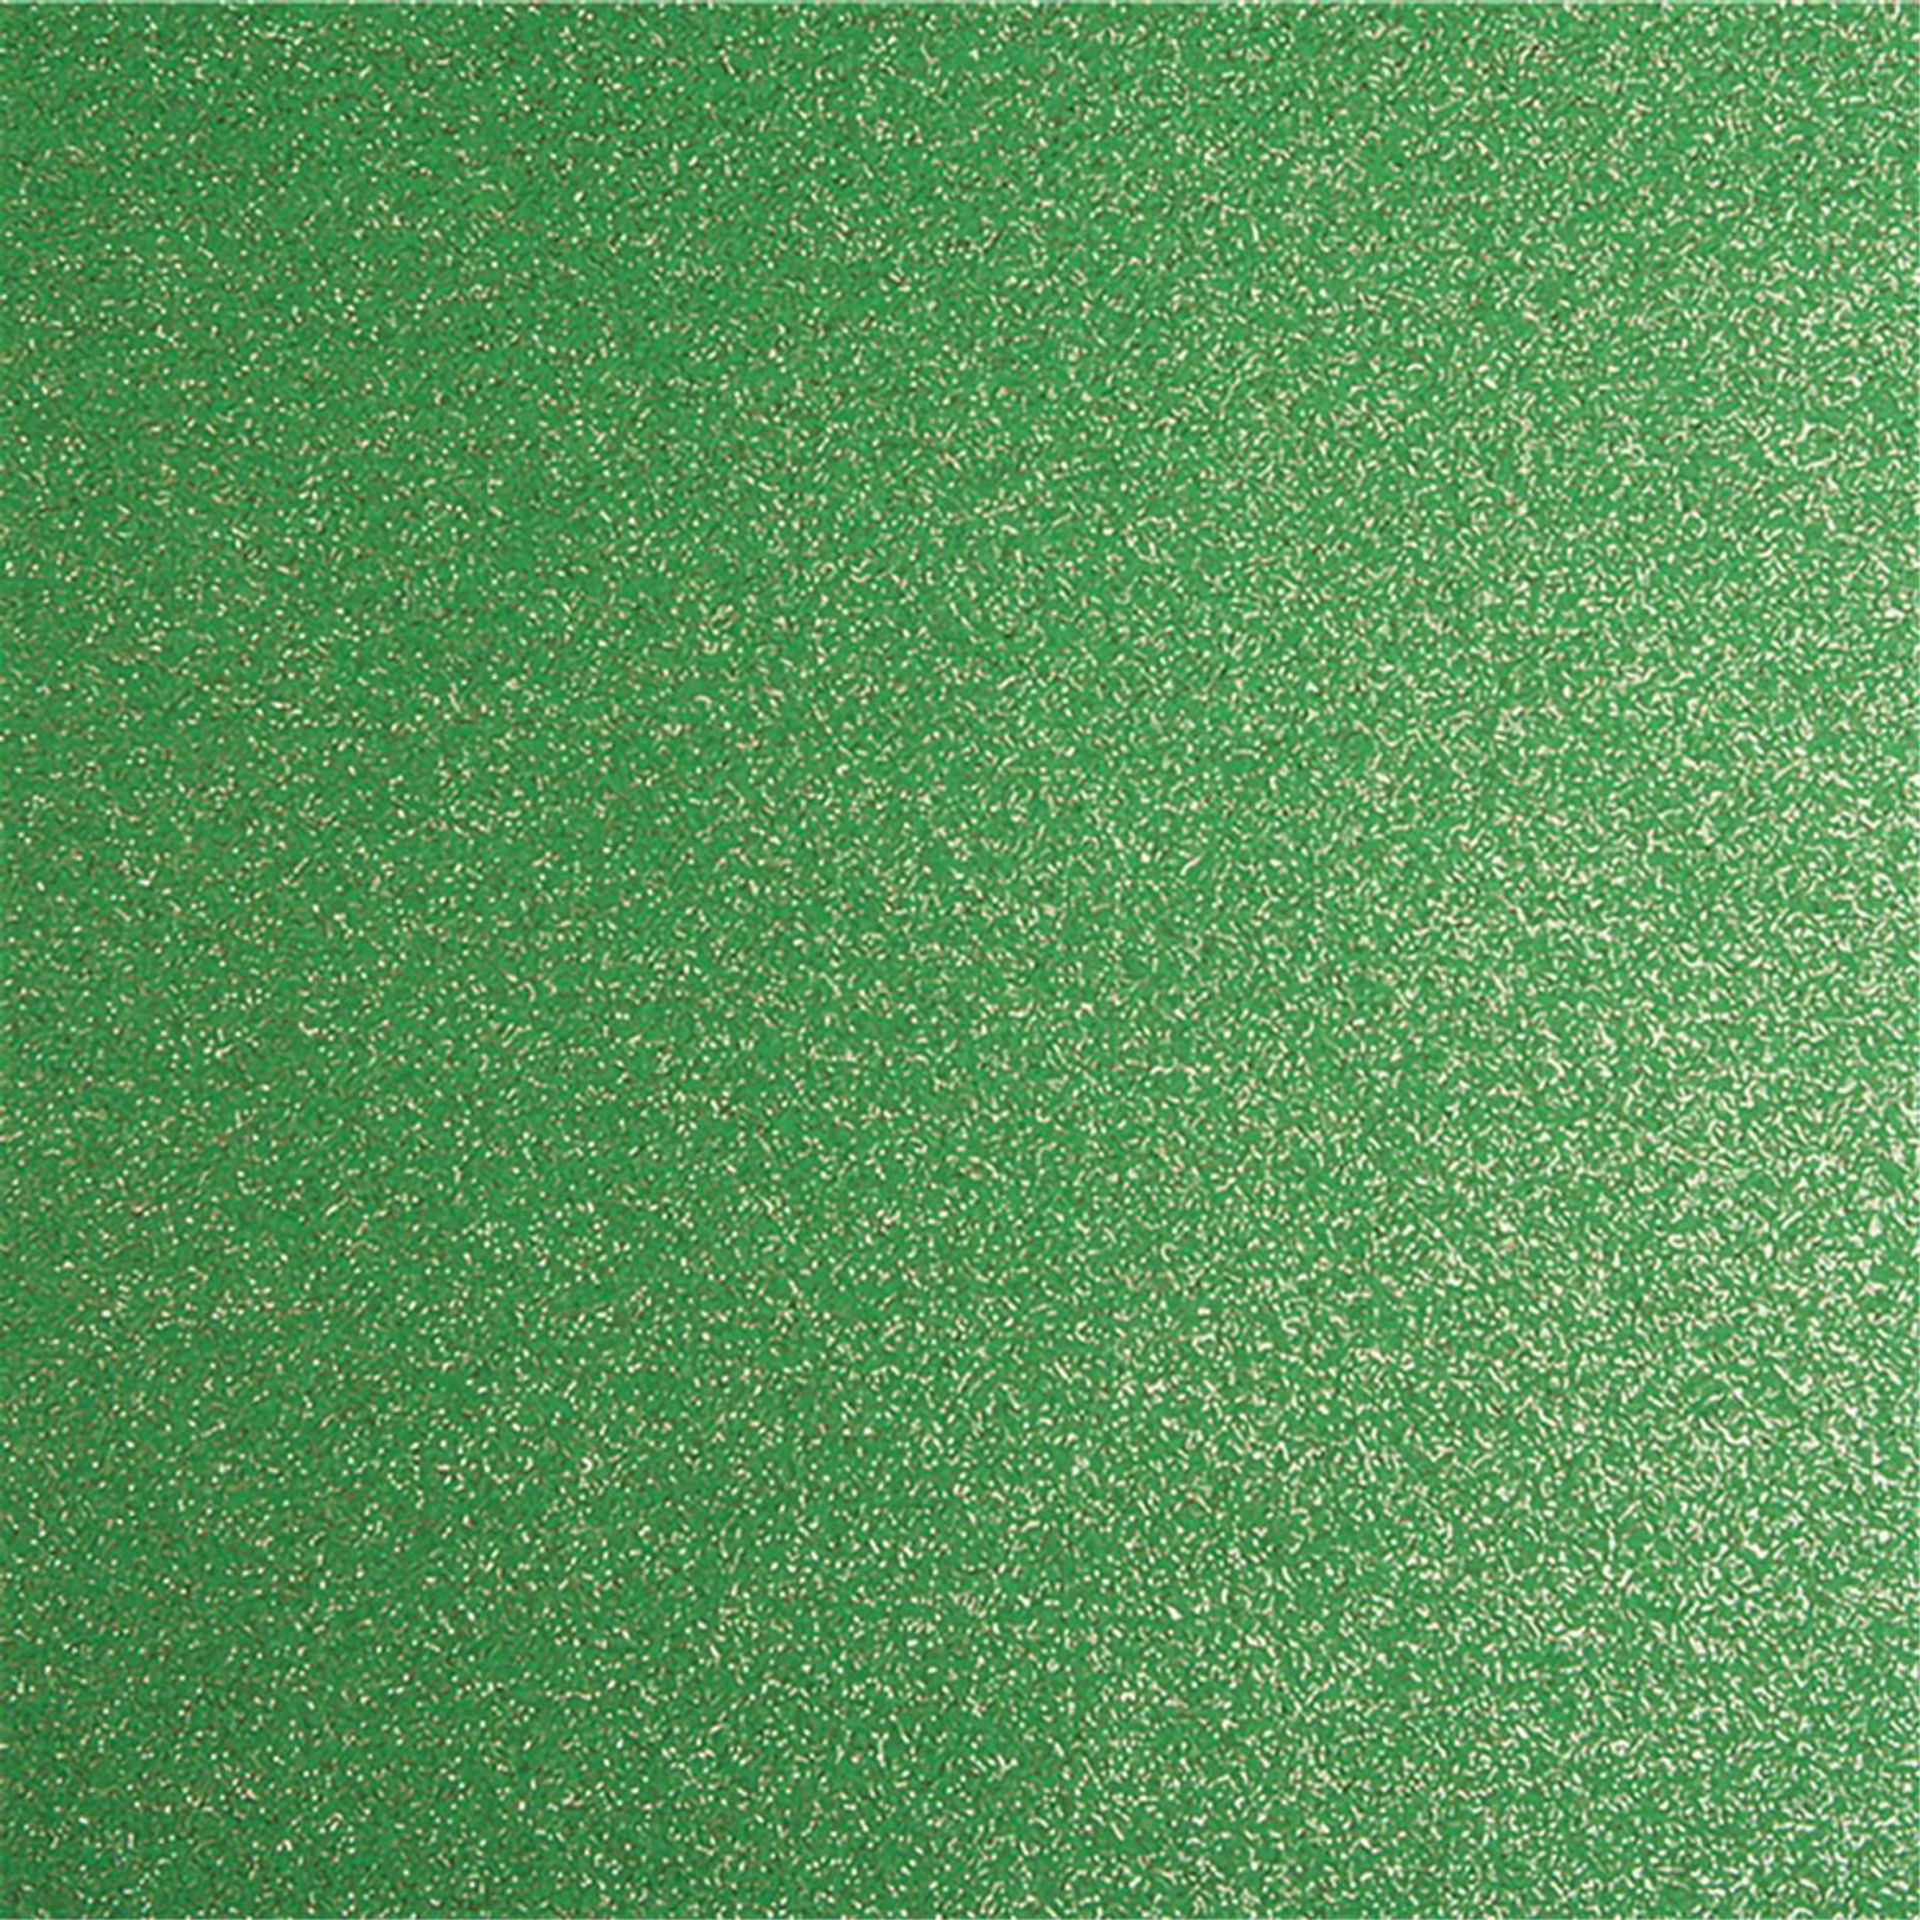 Messeboden Flacher-Nadelvlies-mit-Pailetten EXPOGLITTER Apple Green 0961 ohne Schutzfolie - Rollenbreite 200 cm